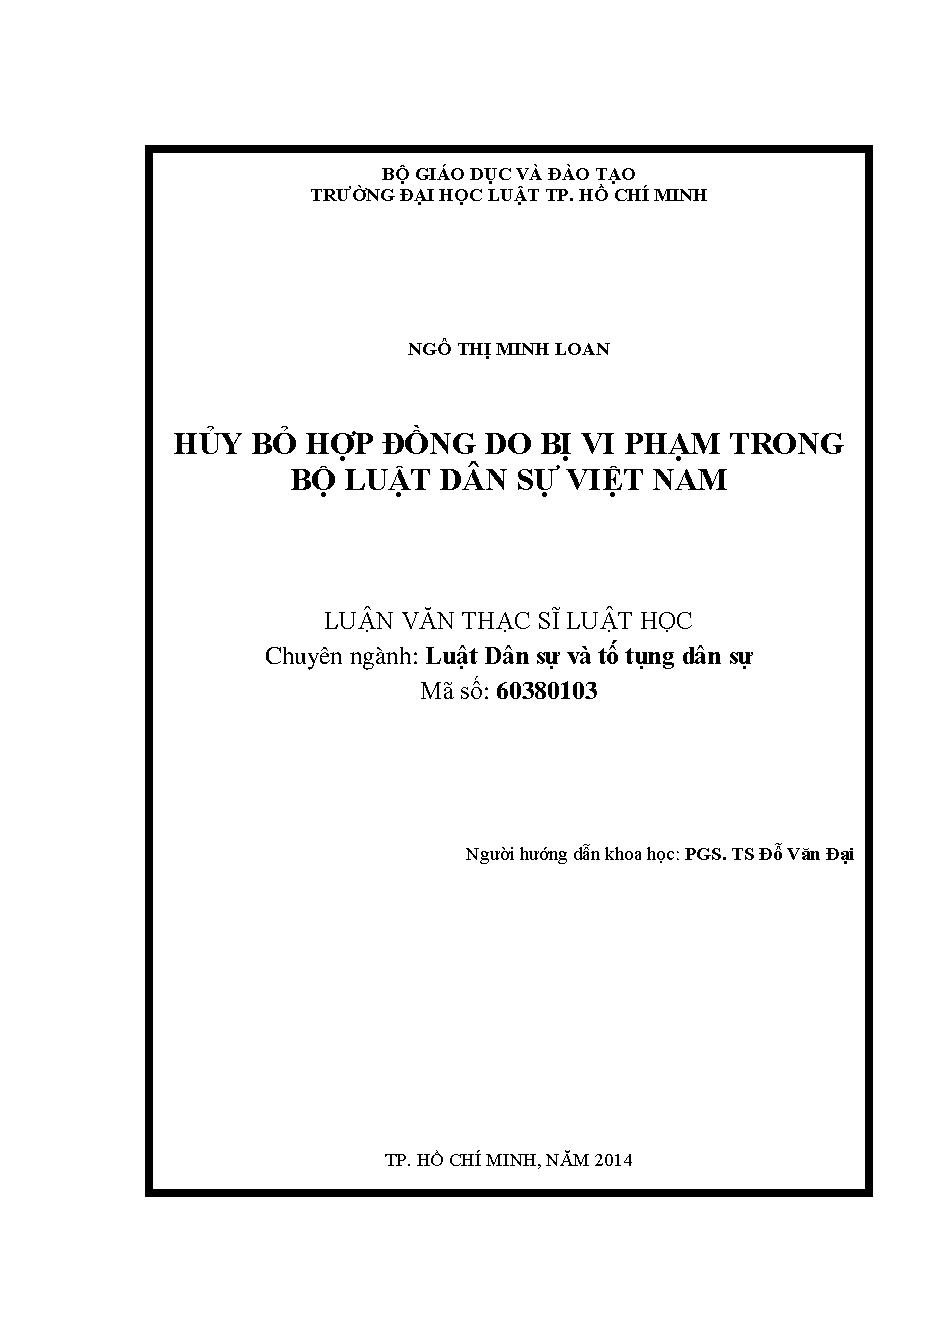 Hủy bỏ hợp đồng do bị vi phạm trong Bộ luật Dân sự Việt Nam